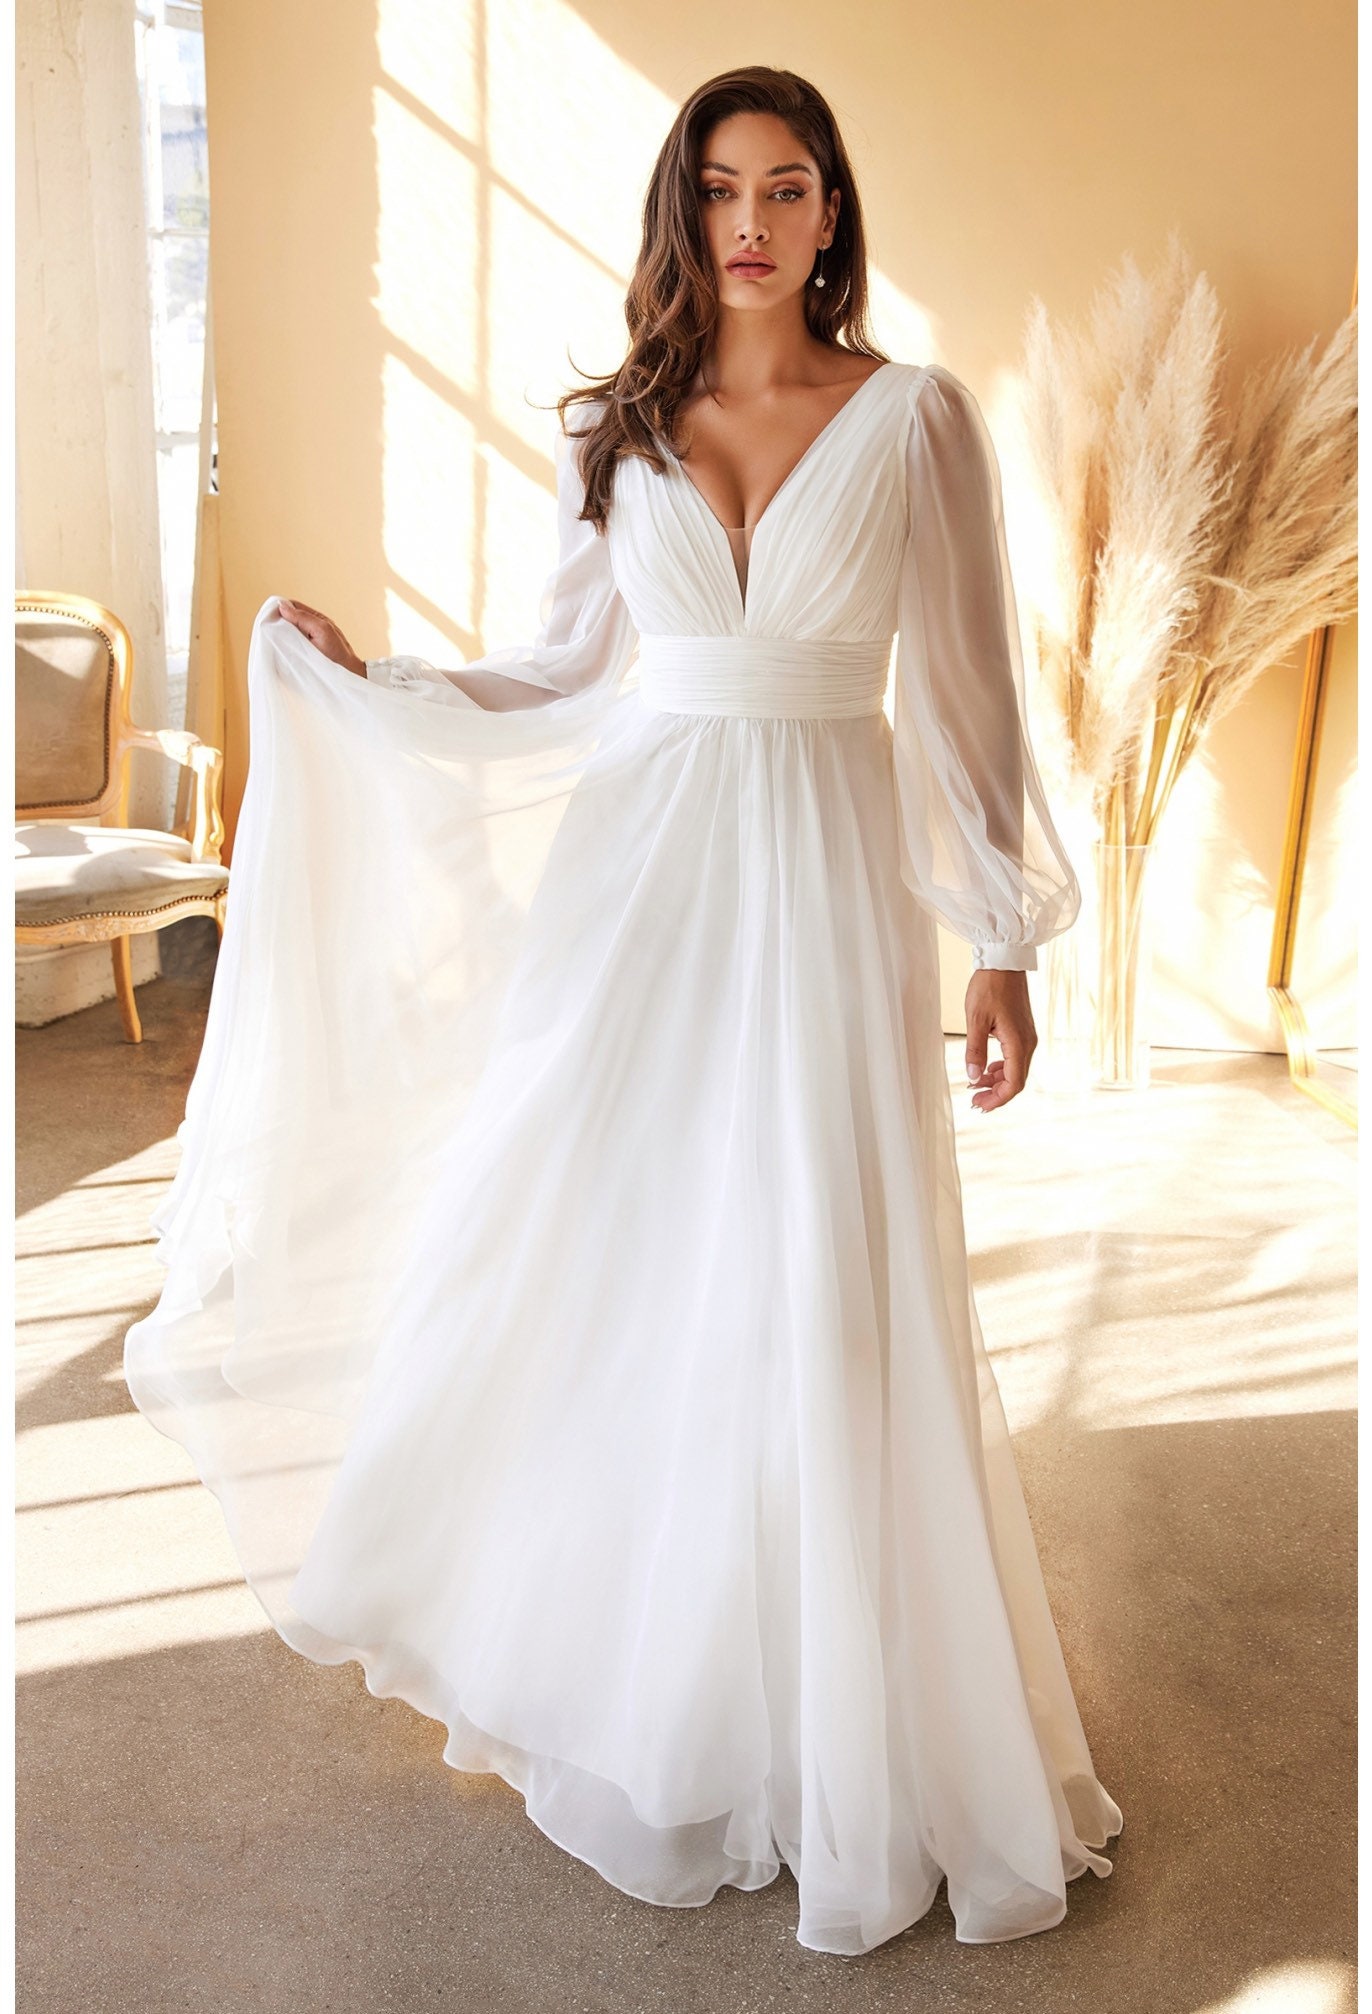 The Amelia White Long Sleeve Chiffon Wedding Gown - Etsy UK